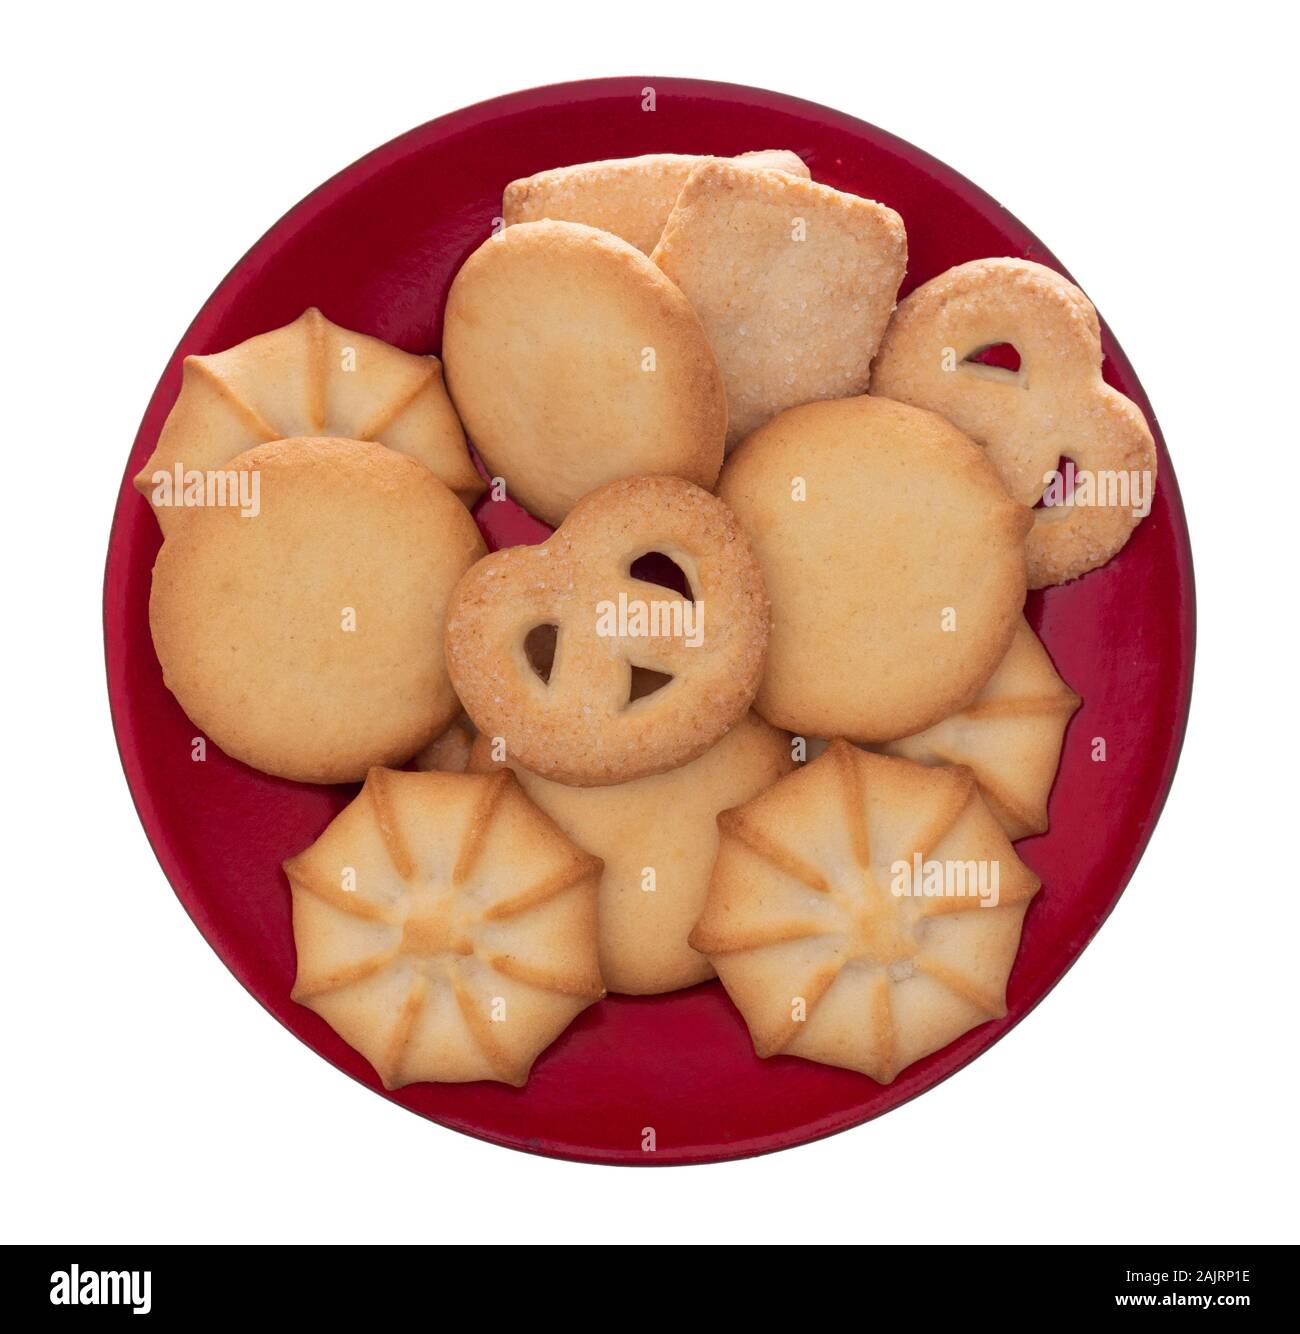 Dulces, galletas dulces, galletas estilo cookies en placa roja, aislado sobre fondo blanco. Foto de stock